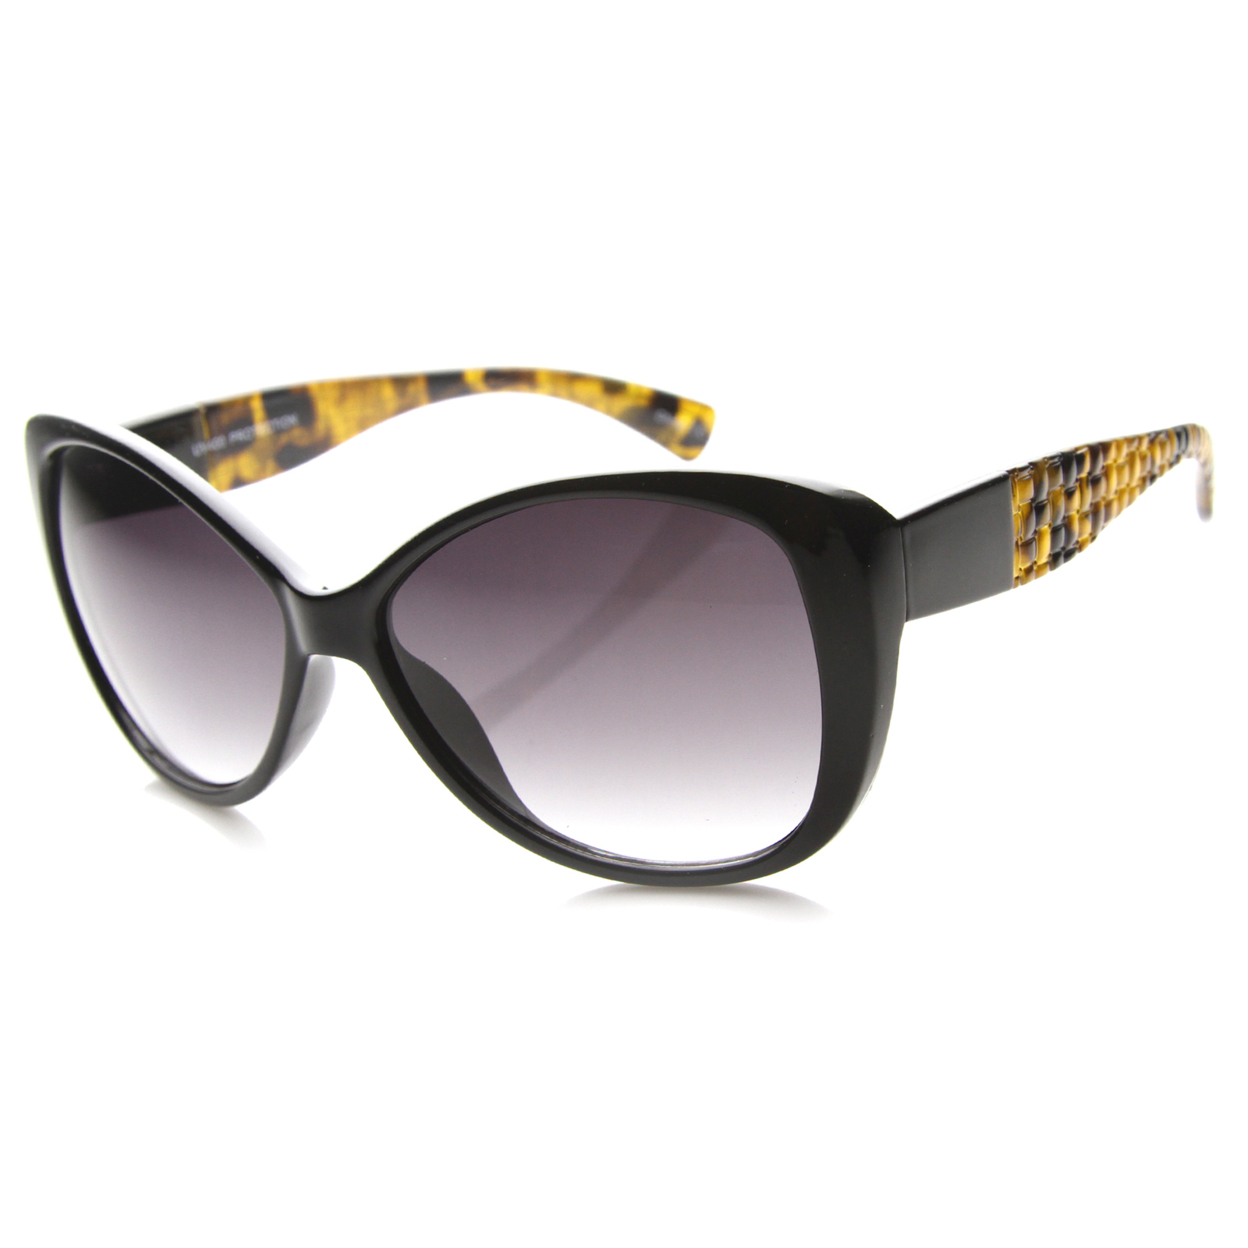 Womens Cat Eye Sunglasses With UV400 Protected Gradient Lens 9940 - Tortoise-Tortoise / Lavender